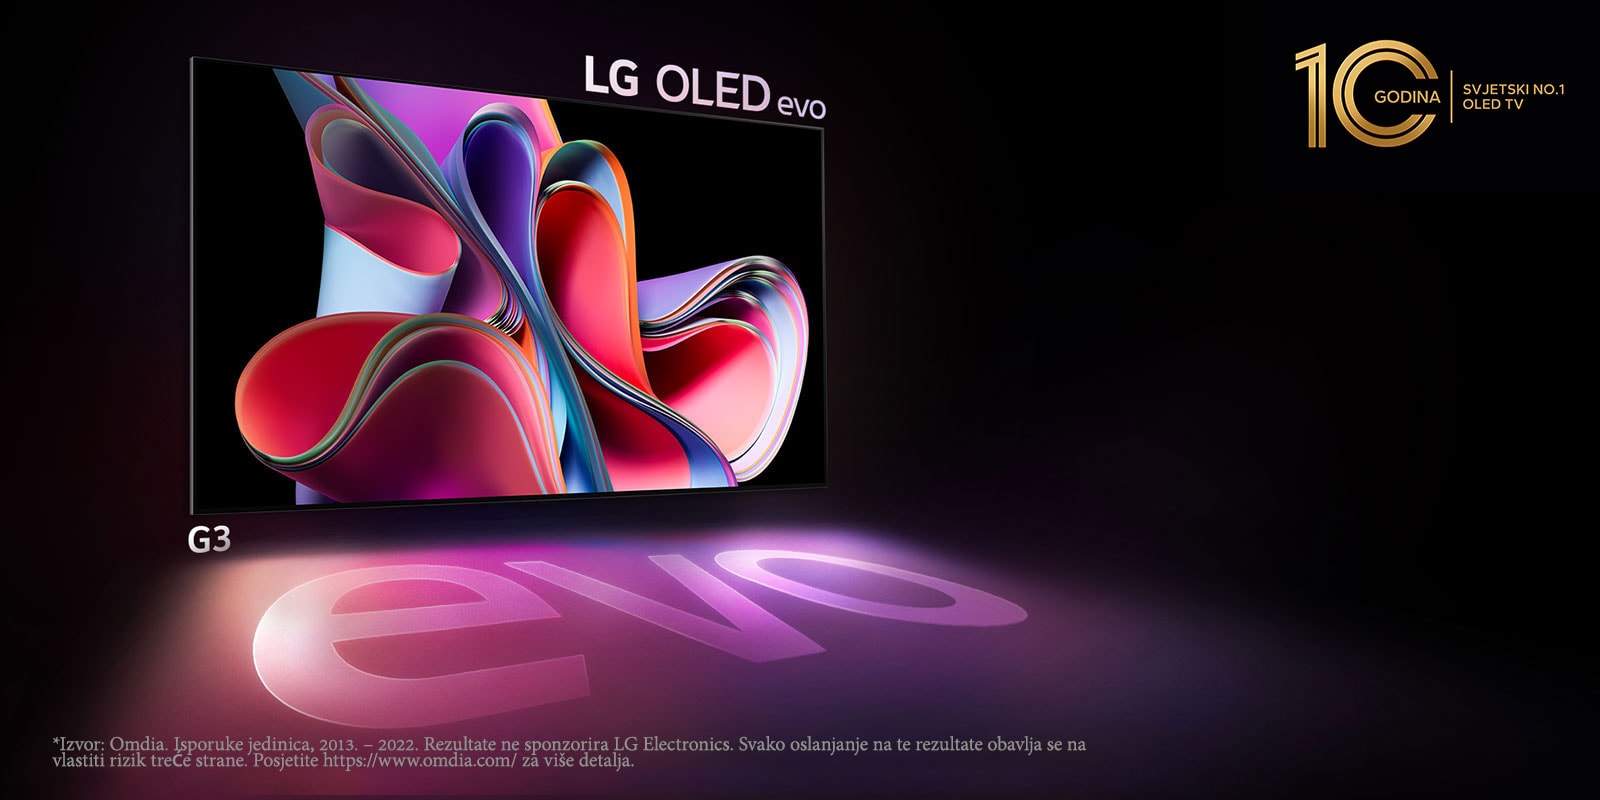 Slika televizora LG OLED G3 na crnoj pozadini s prikazom ružičaste i ljubičaste apstraktne umjetnine. Zaslon baca šarenu sjenu s riječi „evo”. Znak „10 godina svjetski br. 1 OLED TV nalazi se u gornjem lijevom kutu slike. 